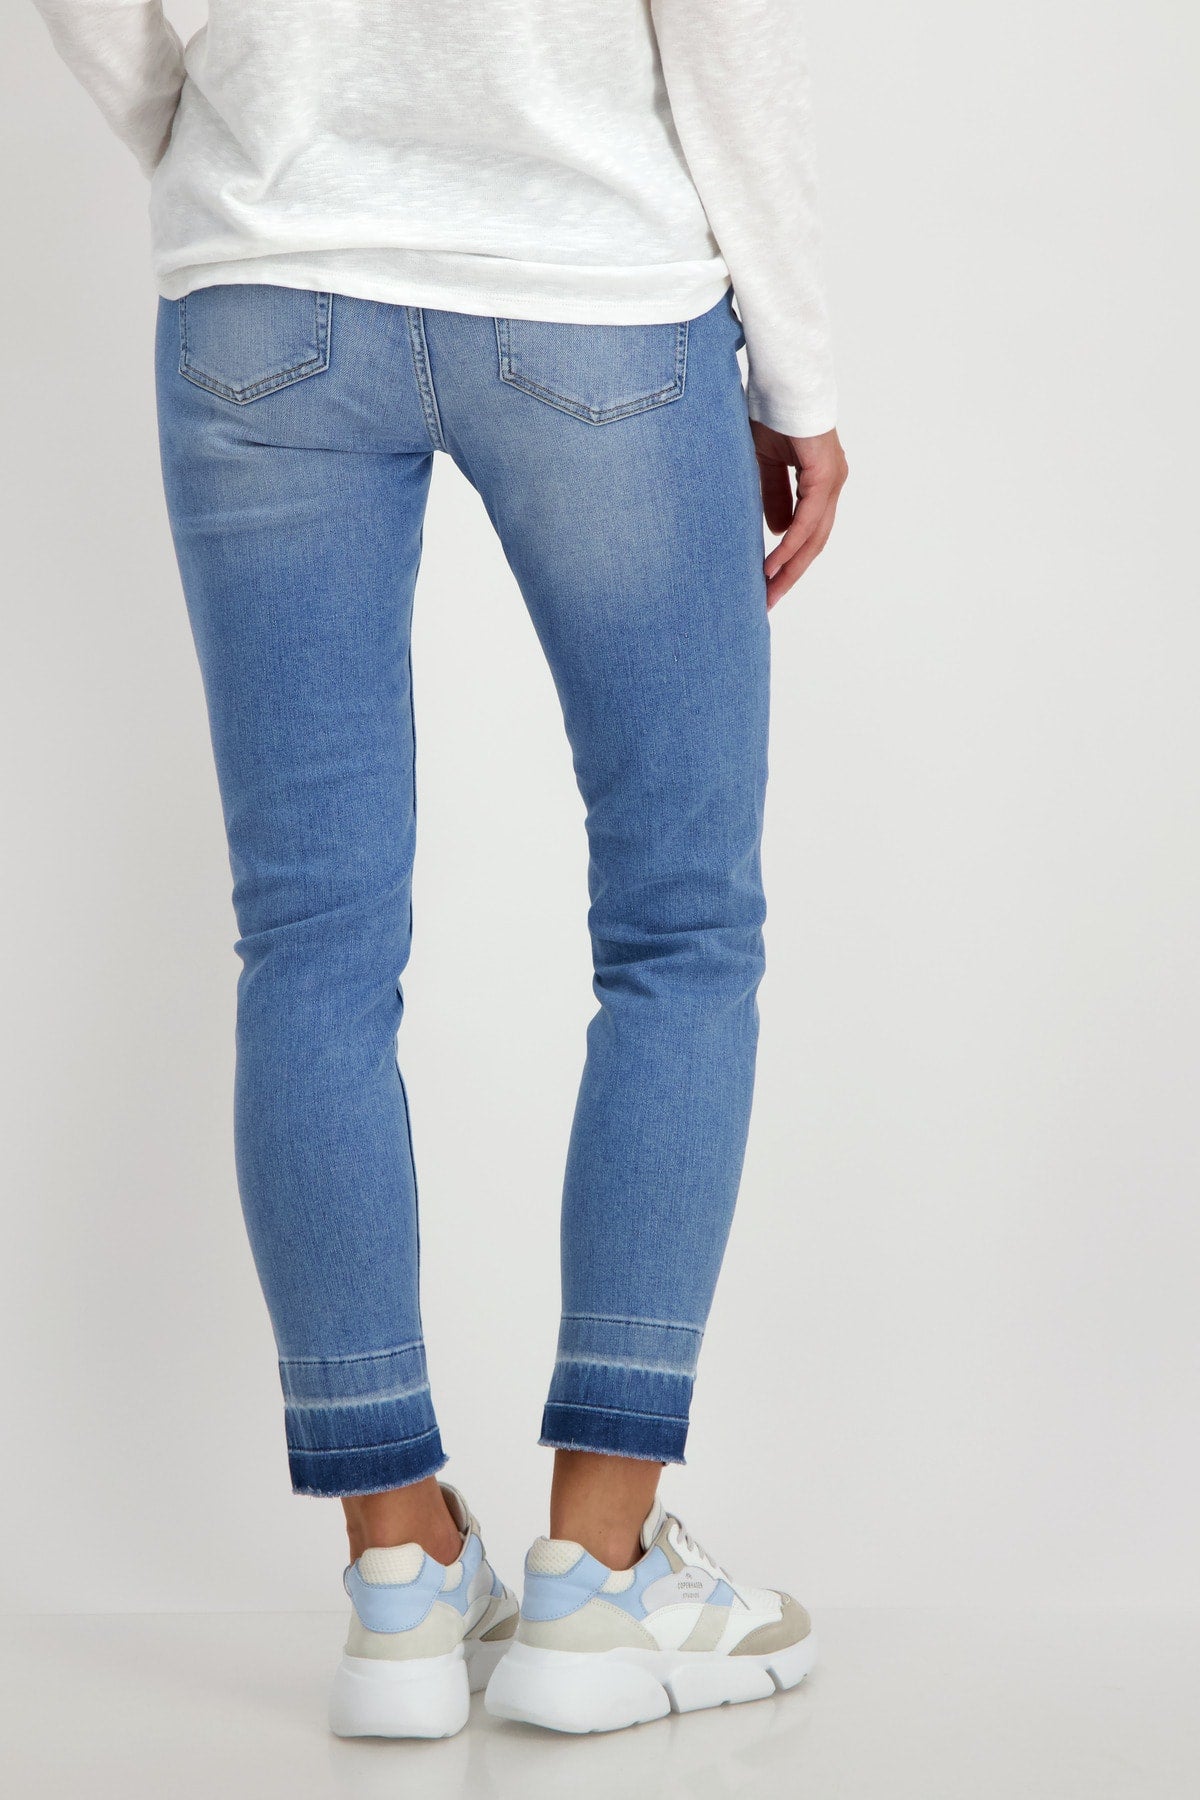 Monari 5 Pocket Jean